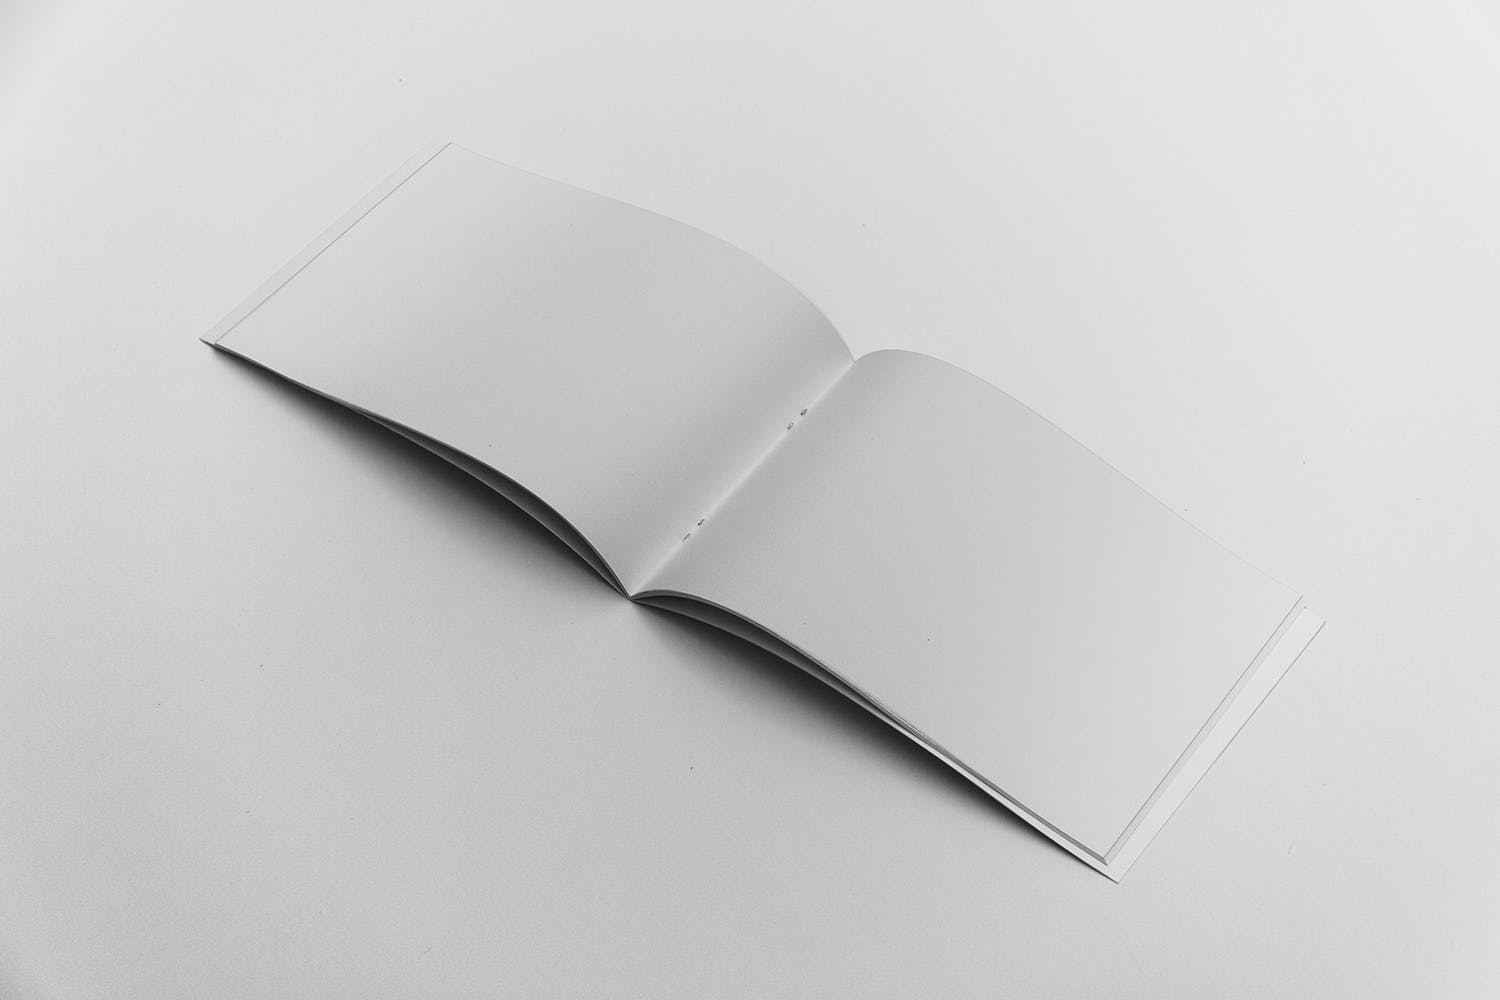 宣传画册/企业画册内页版式设计图样机蚂蚁素材精选 Open Landscape Brochure Mockup插图(1)